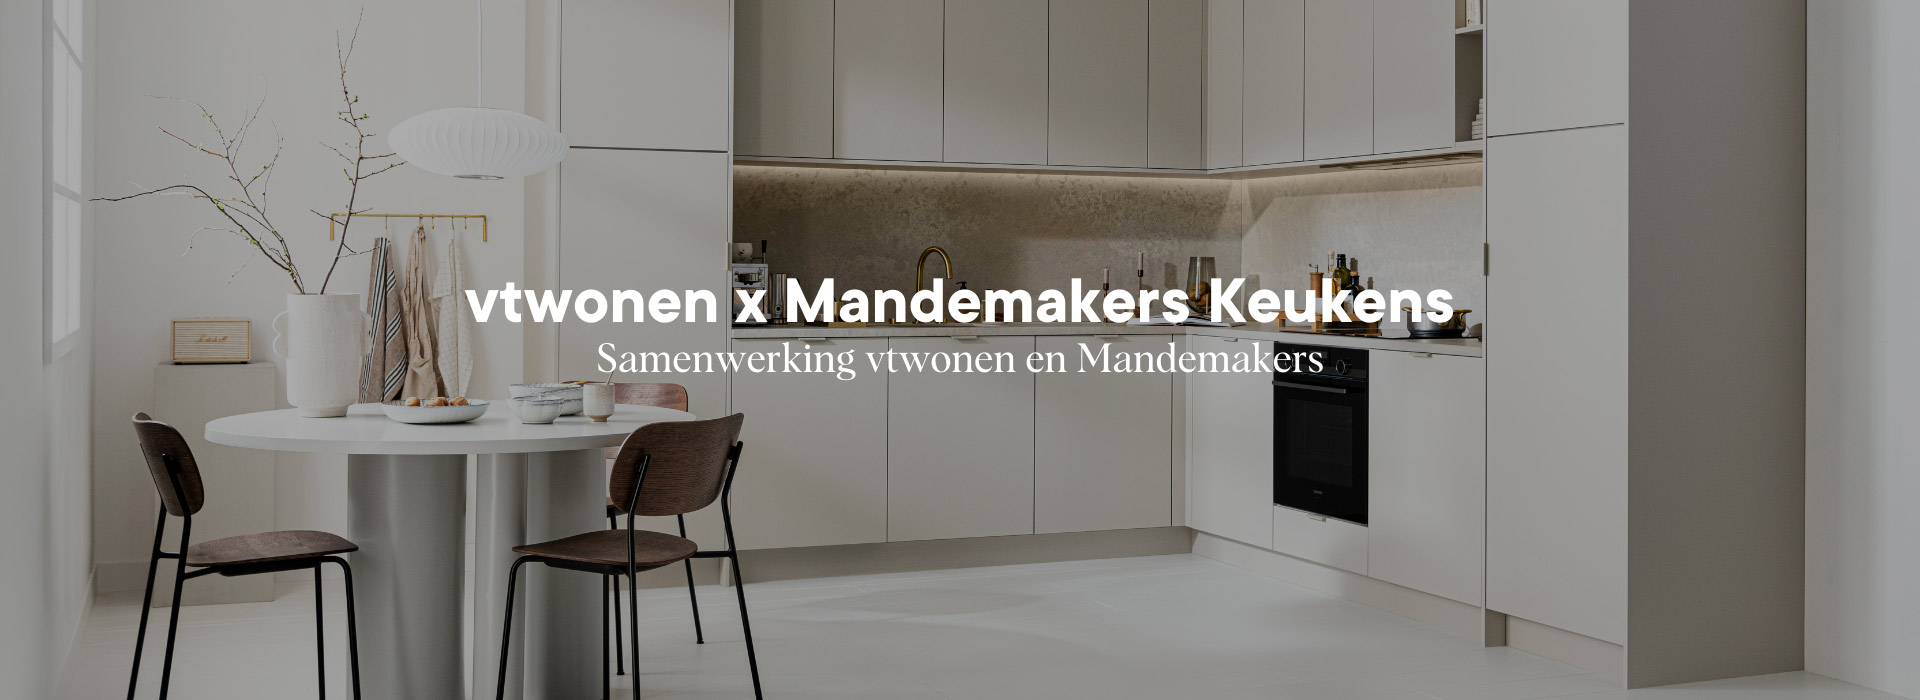 vtwonen X Mandemakers Keukens